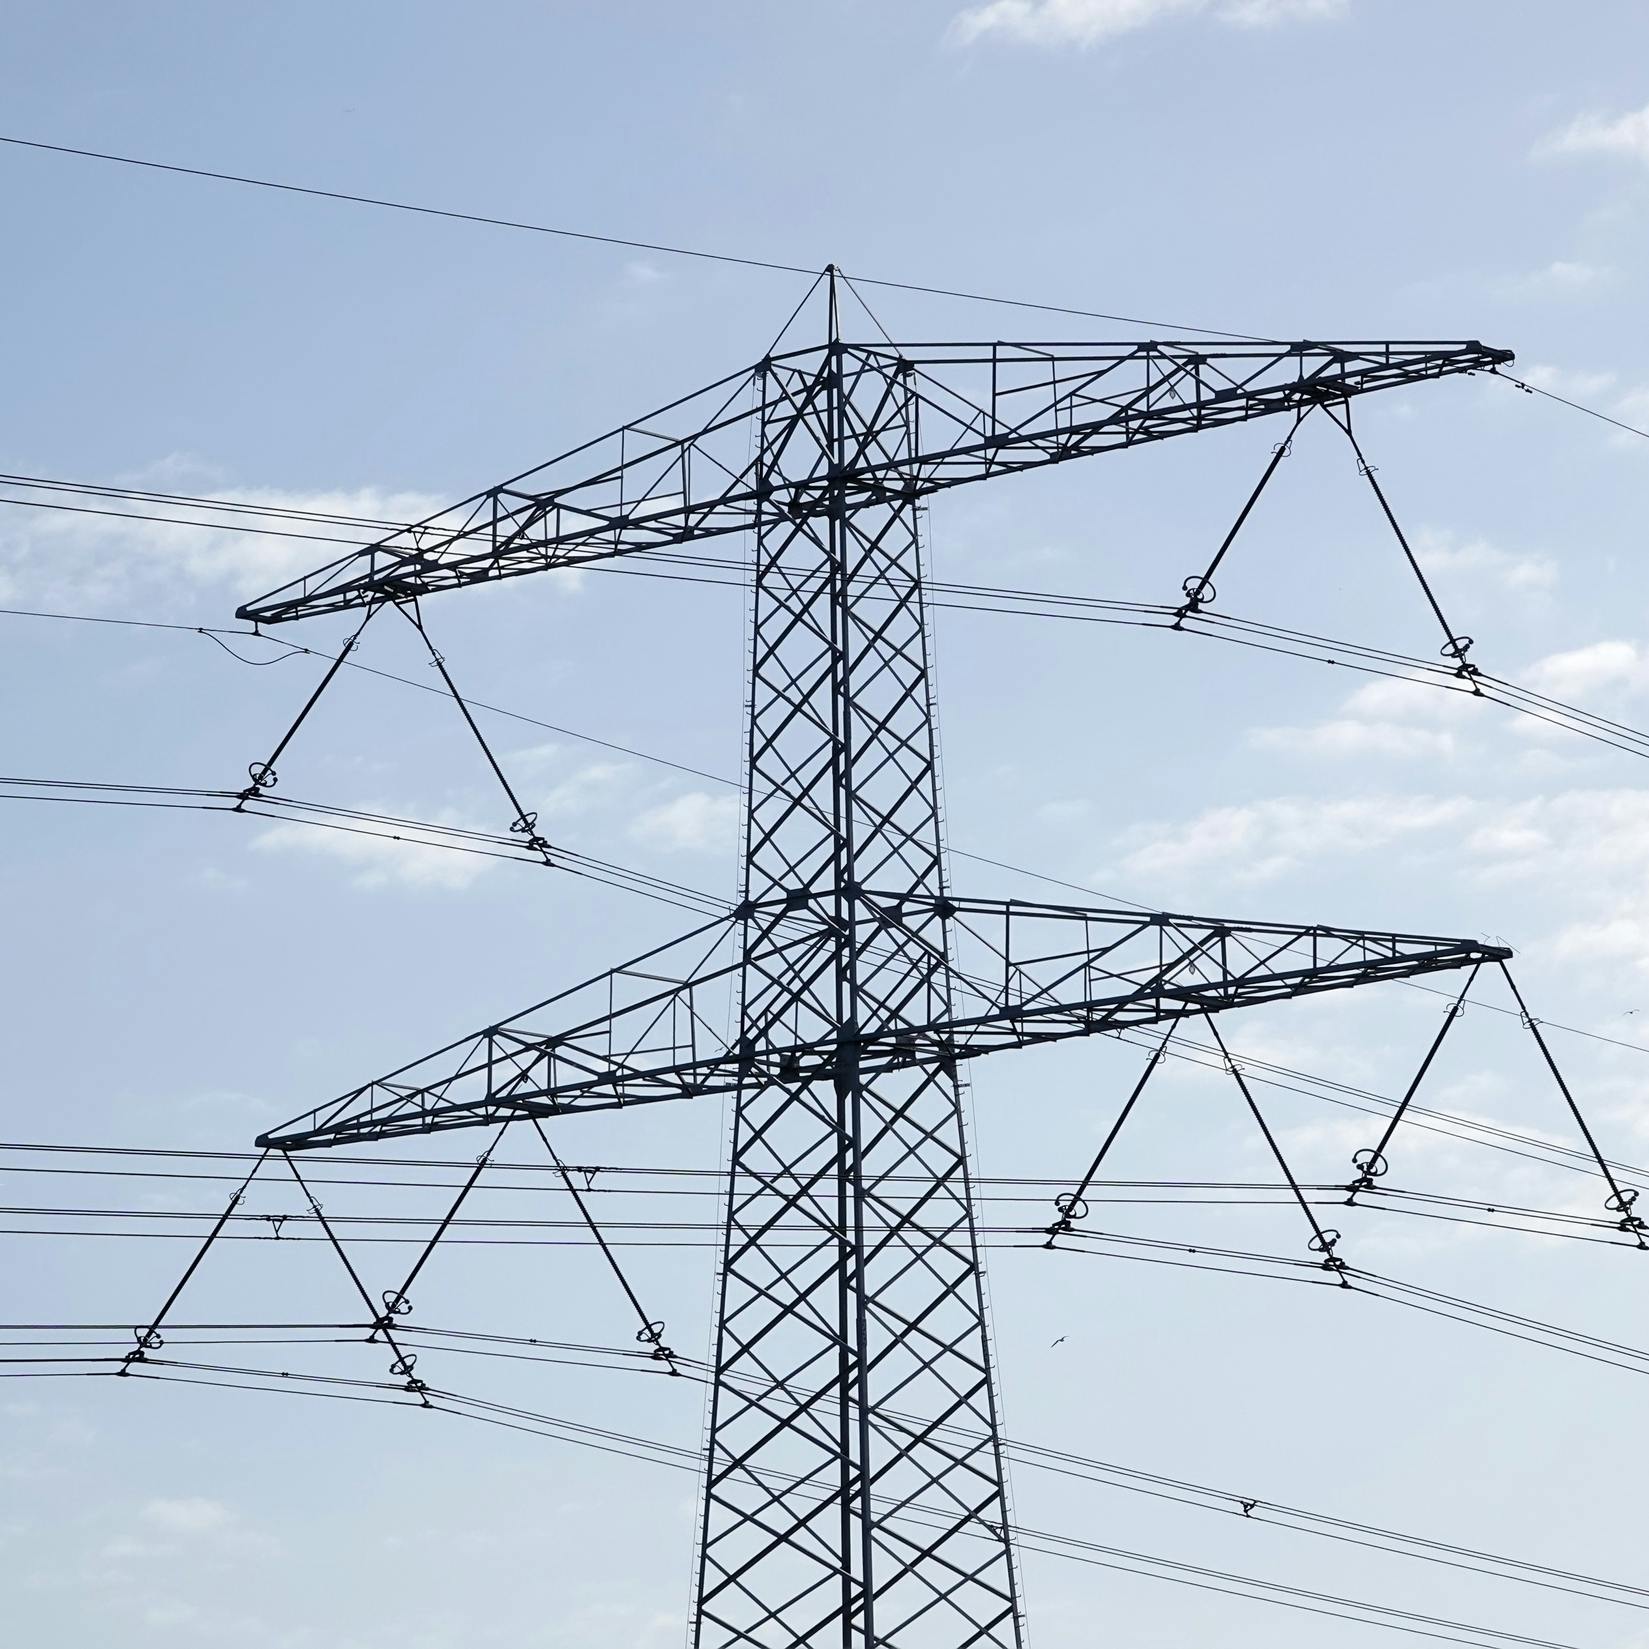 Overvol elektriciteitsnet noopt bedrijven tot delen van stroom